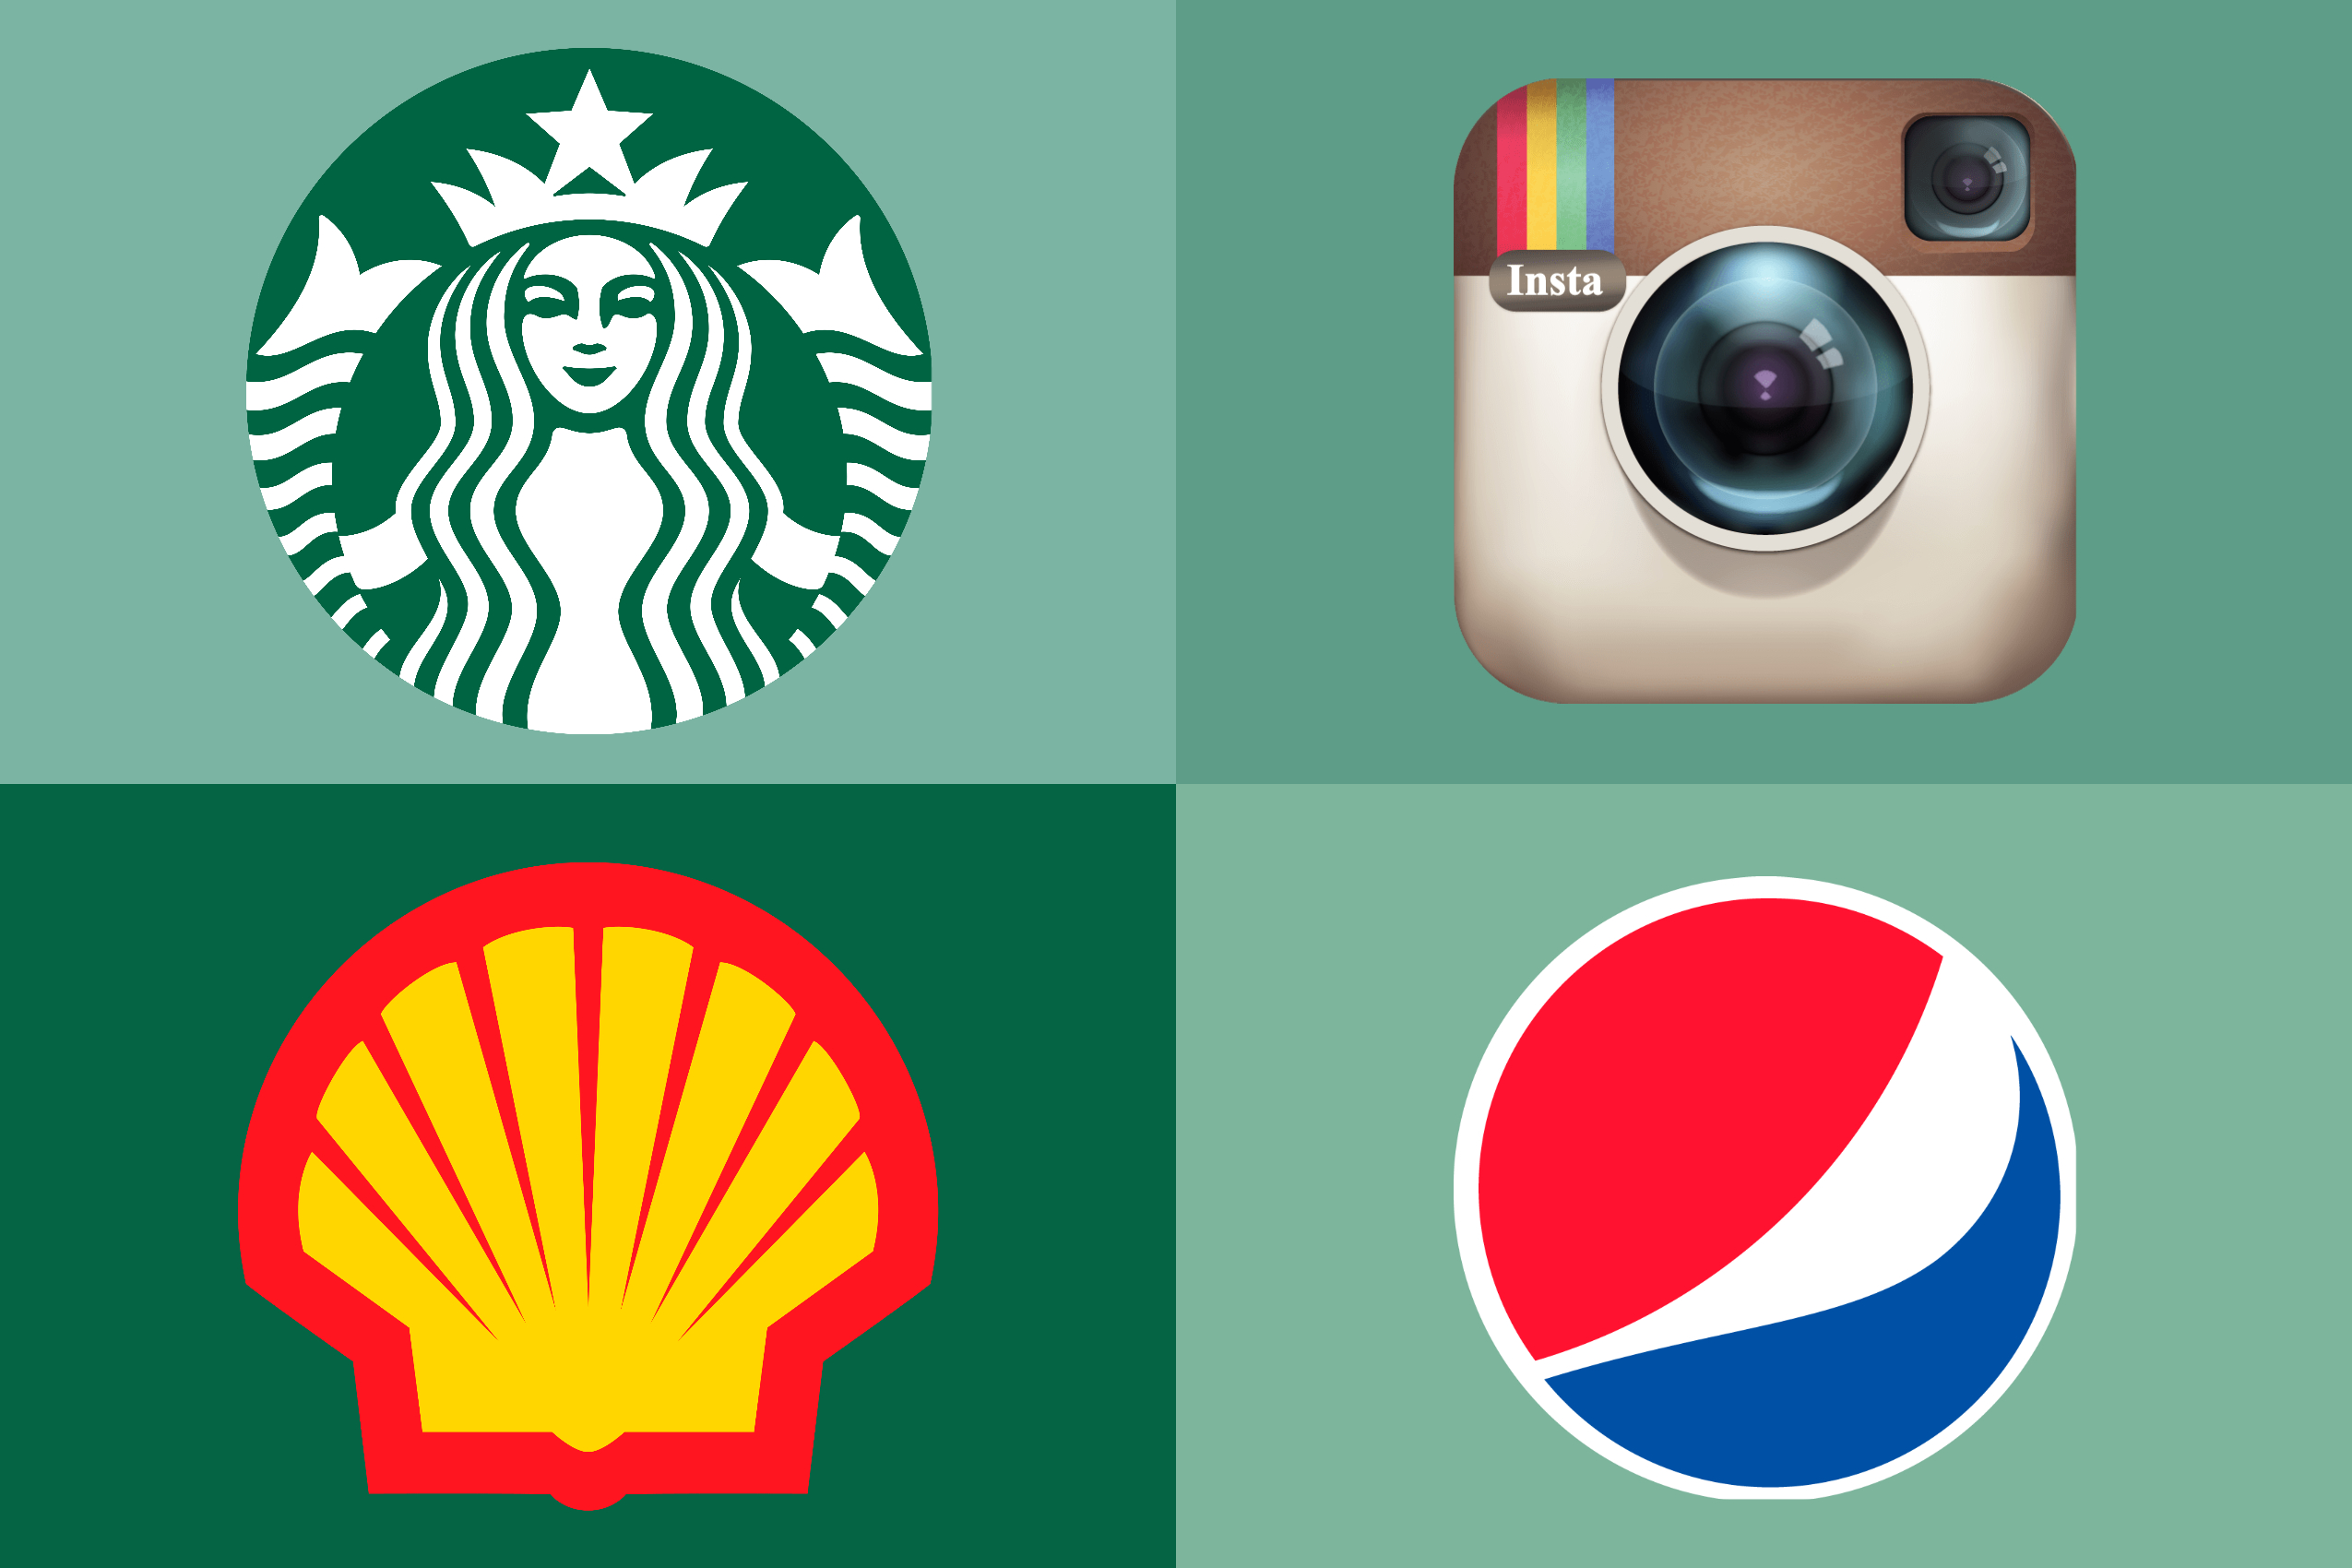 Quiz das Logos: consegue adivinhar estas 7 empresas famosas apenas pela LOGO?